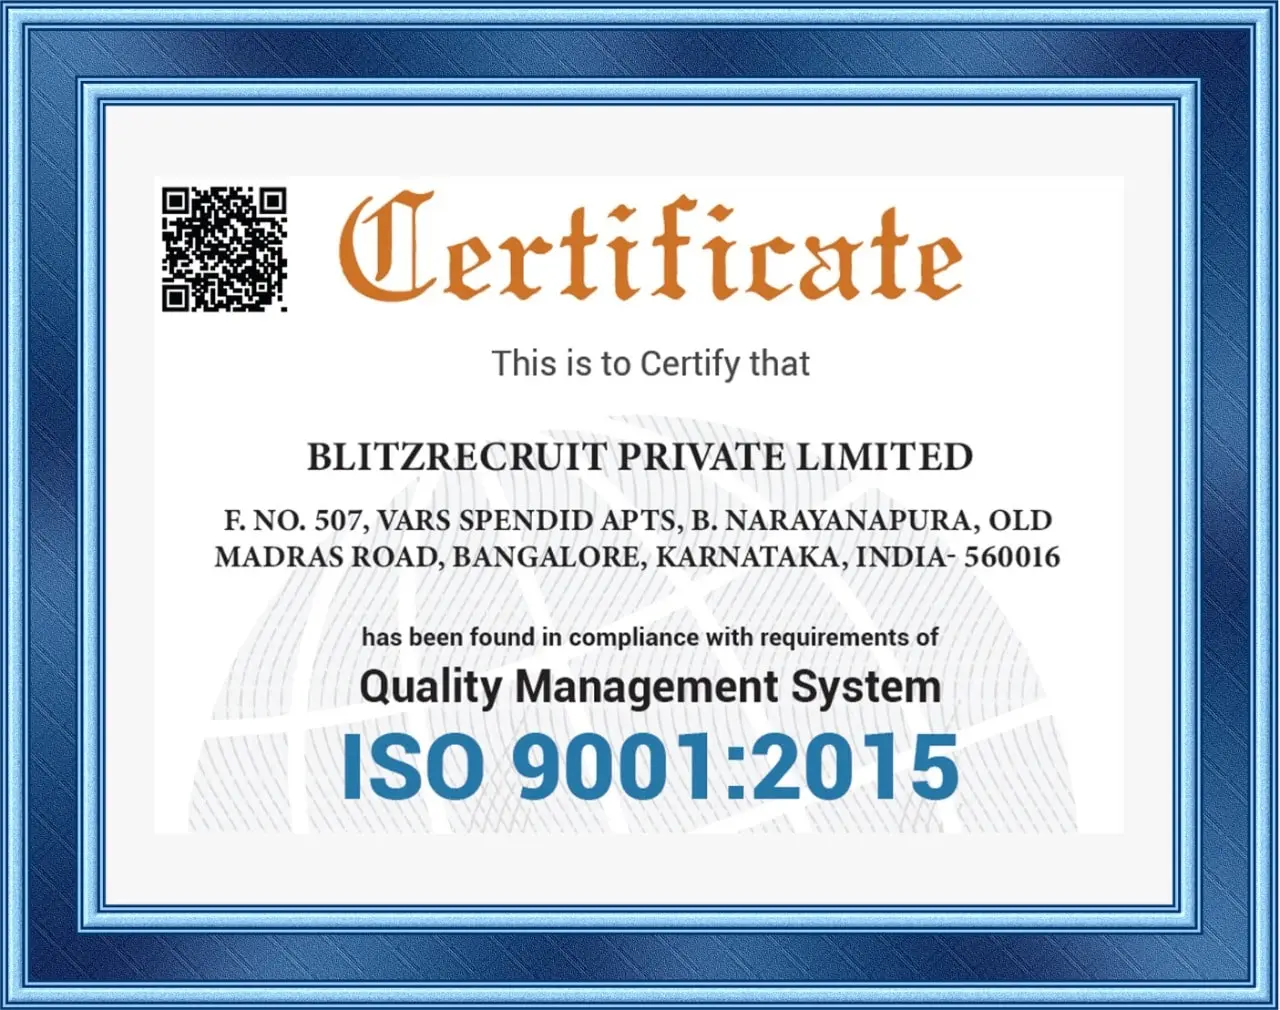 InterviewCracker ISO 9001:2015